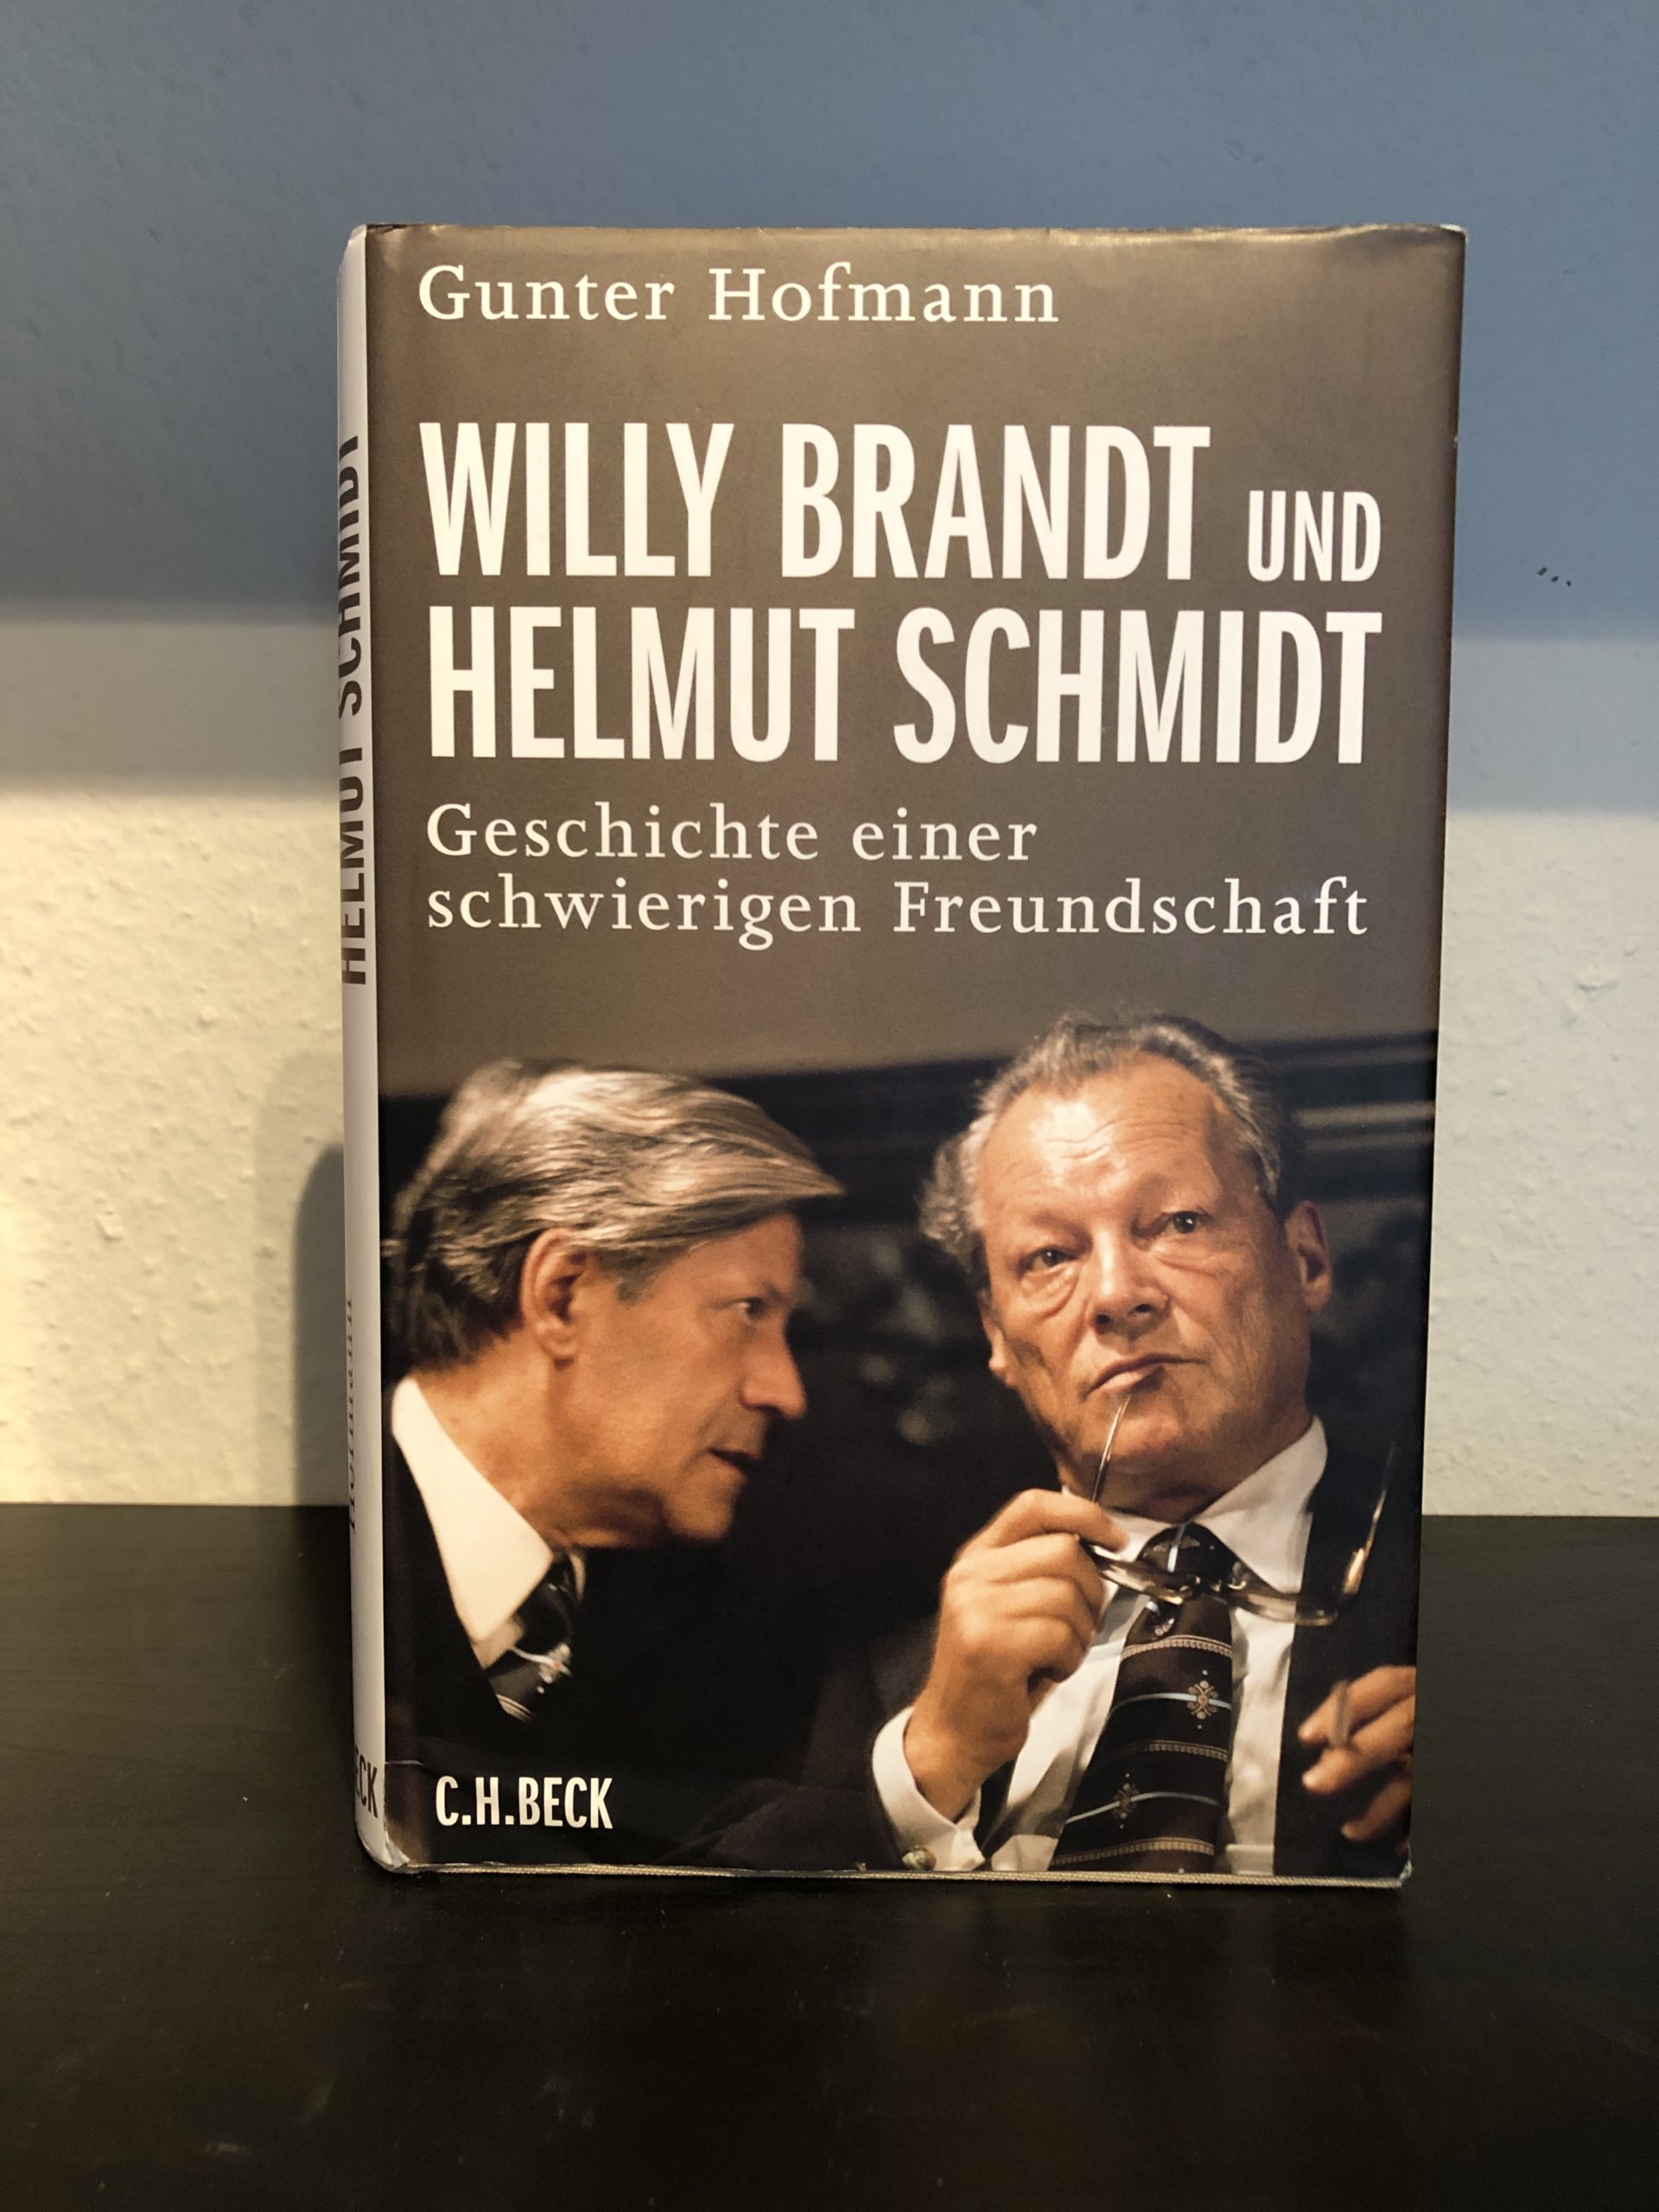 Willy Brandt und Helmut Schmidt - Geschichte einer schwierigen Freundschaft - Gunter Hofmann